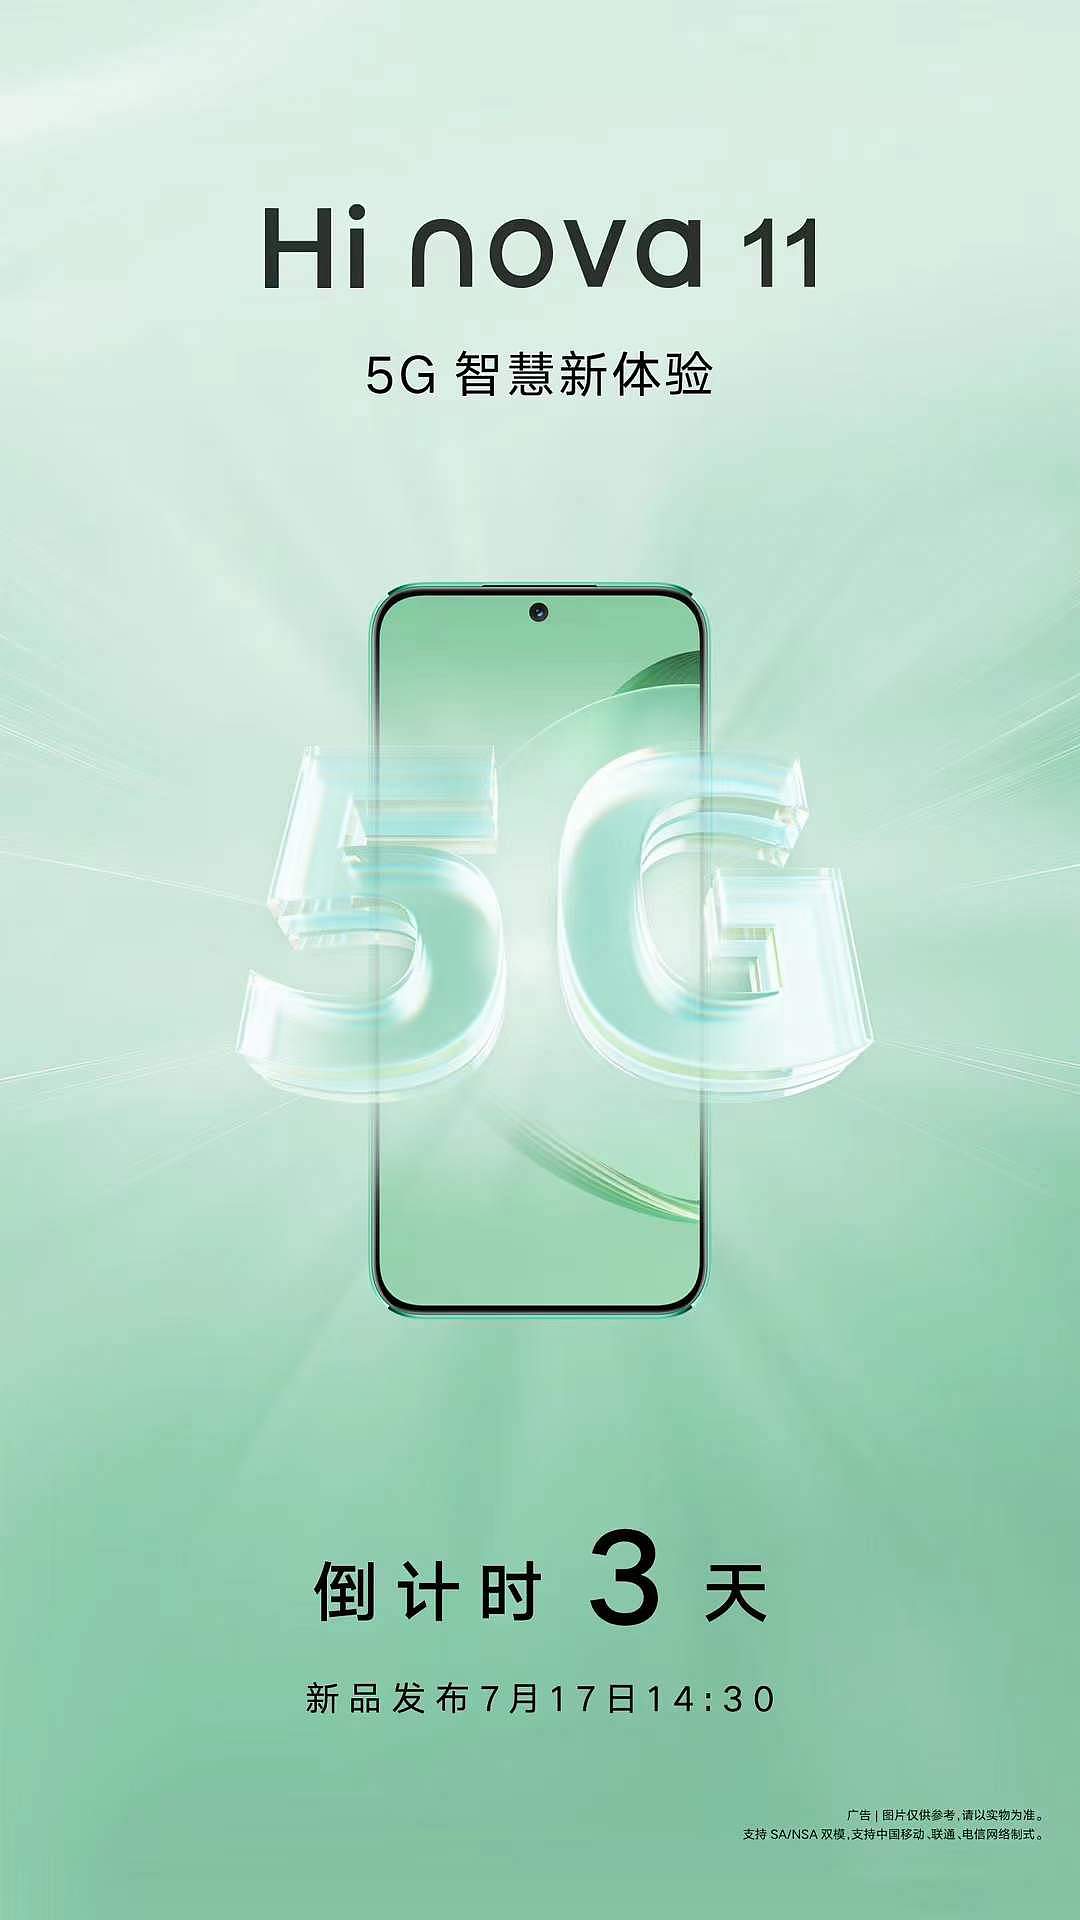 中邮 Hi nova 11 手机发布会定档 7 月 17 日，slogan 为“5G 智慧新体验” - 1